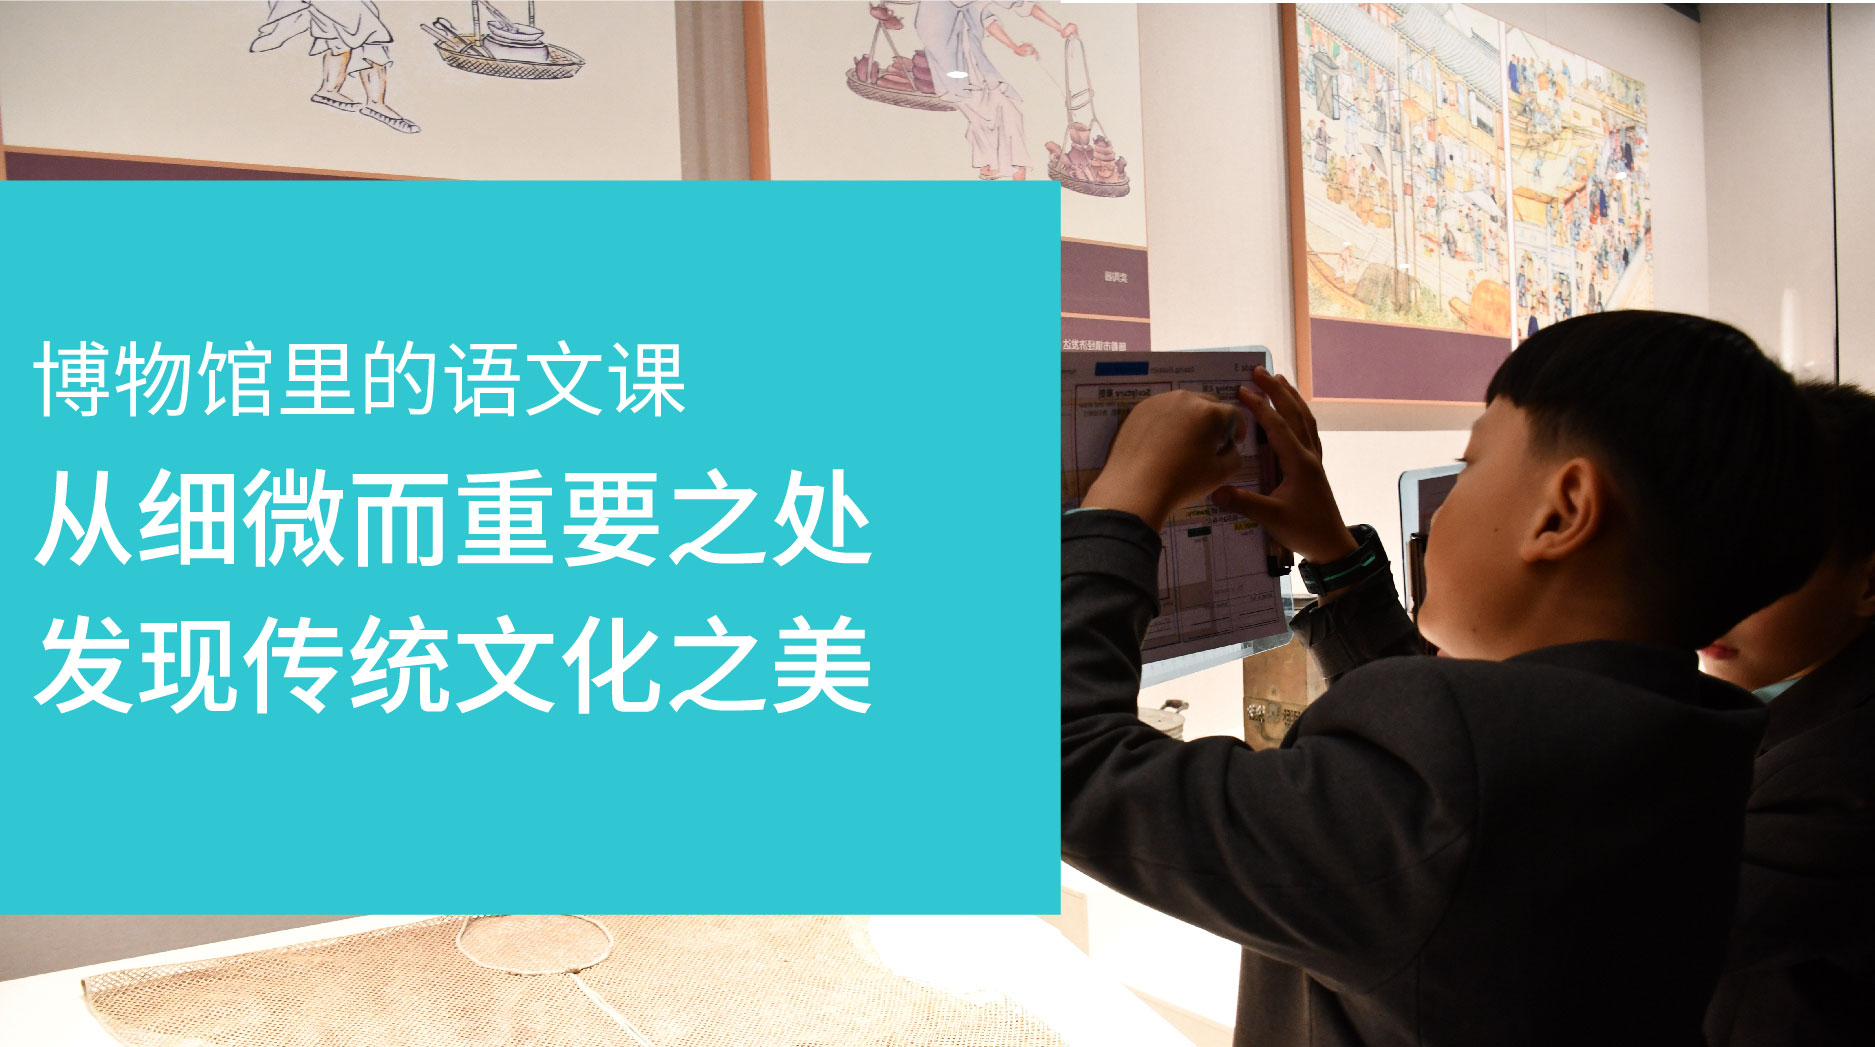 博物馆里的语文课|从细微而重要之处，发现传统文化之美 - Chinese in Museum